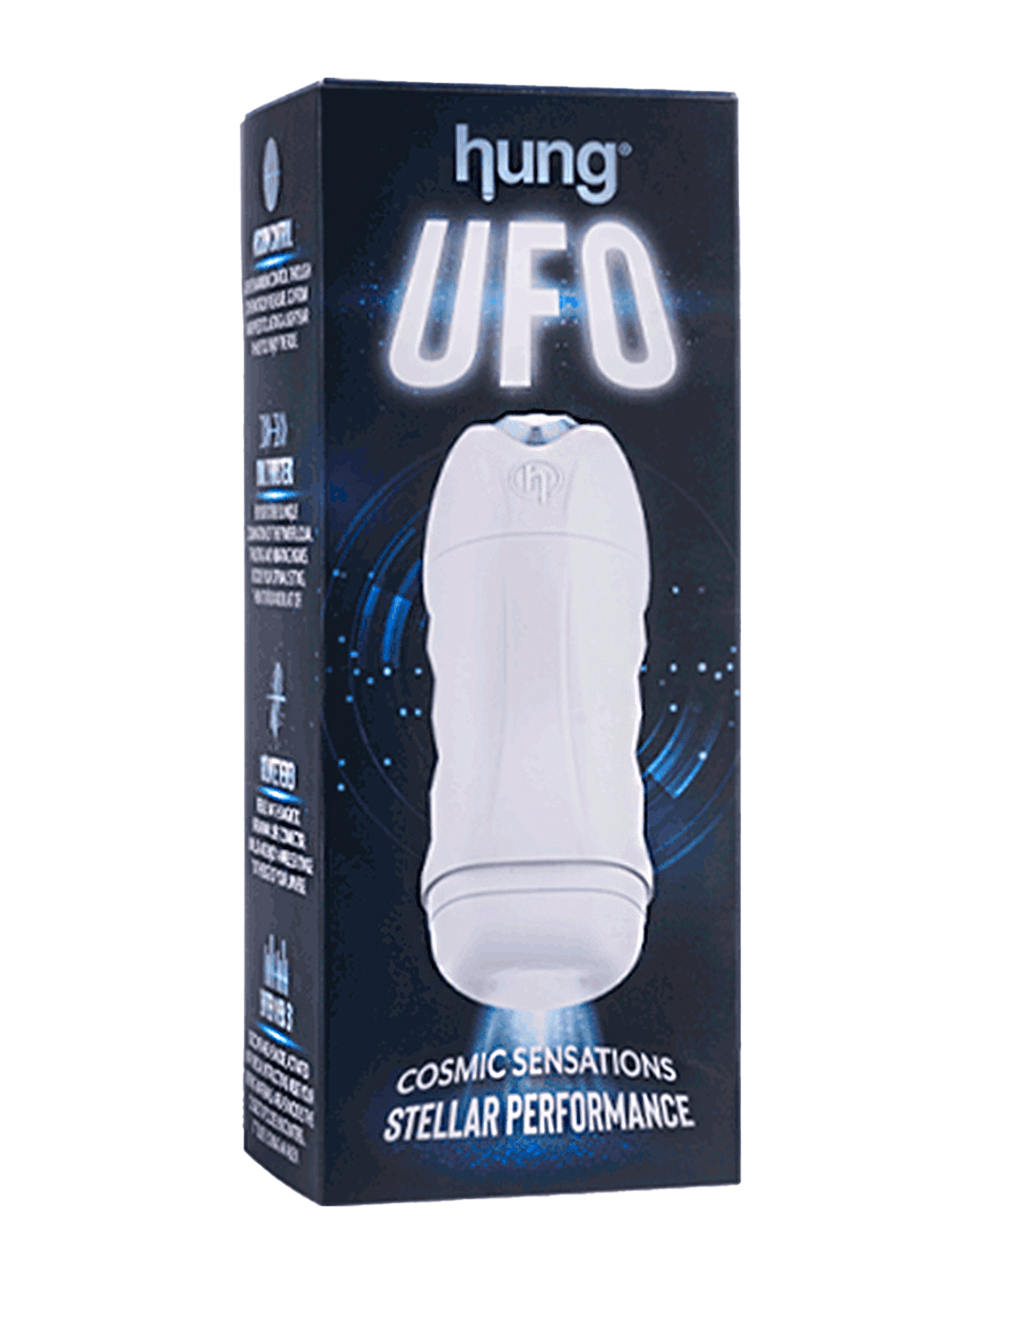 Hung UFO - Box